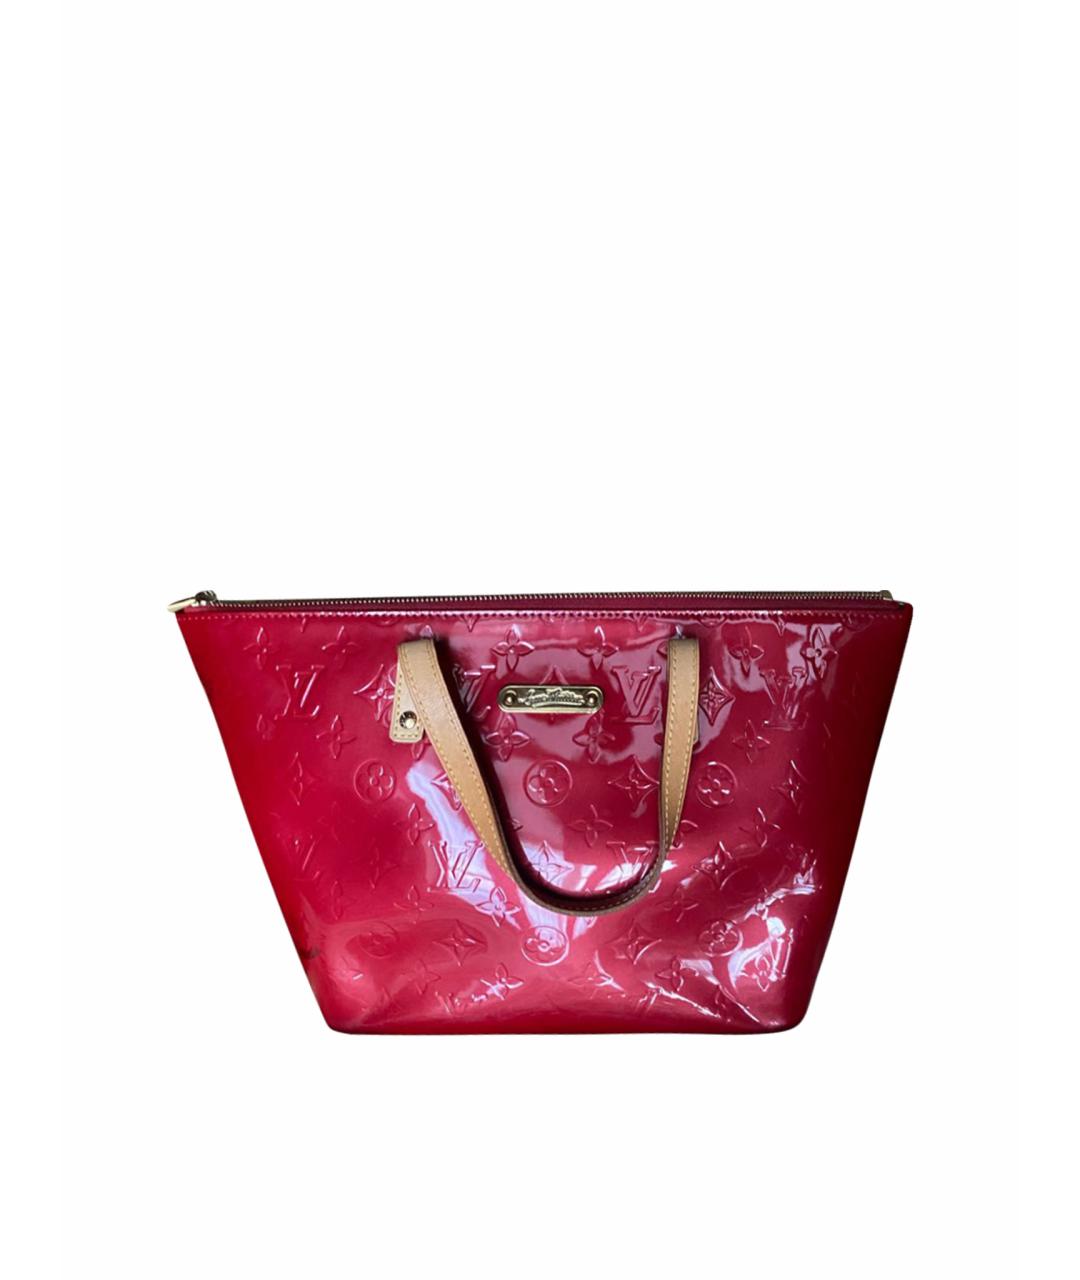 LOUIS VUITTON PRE-OWNED Красная сумка с короткими ручками из лакированной кожи, фото 1